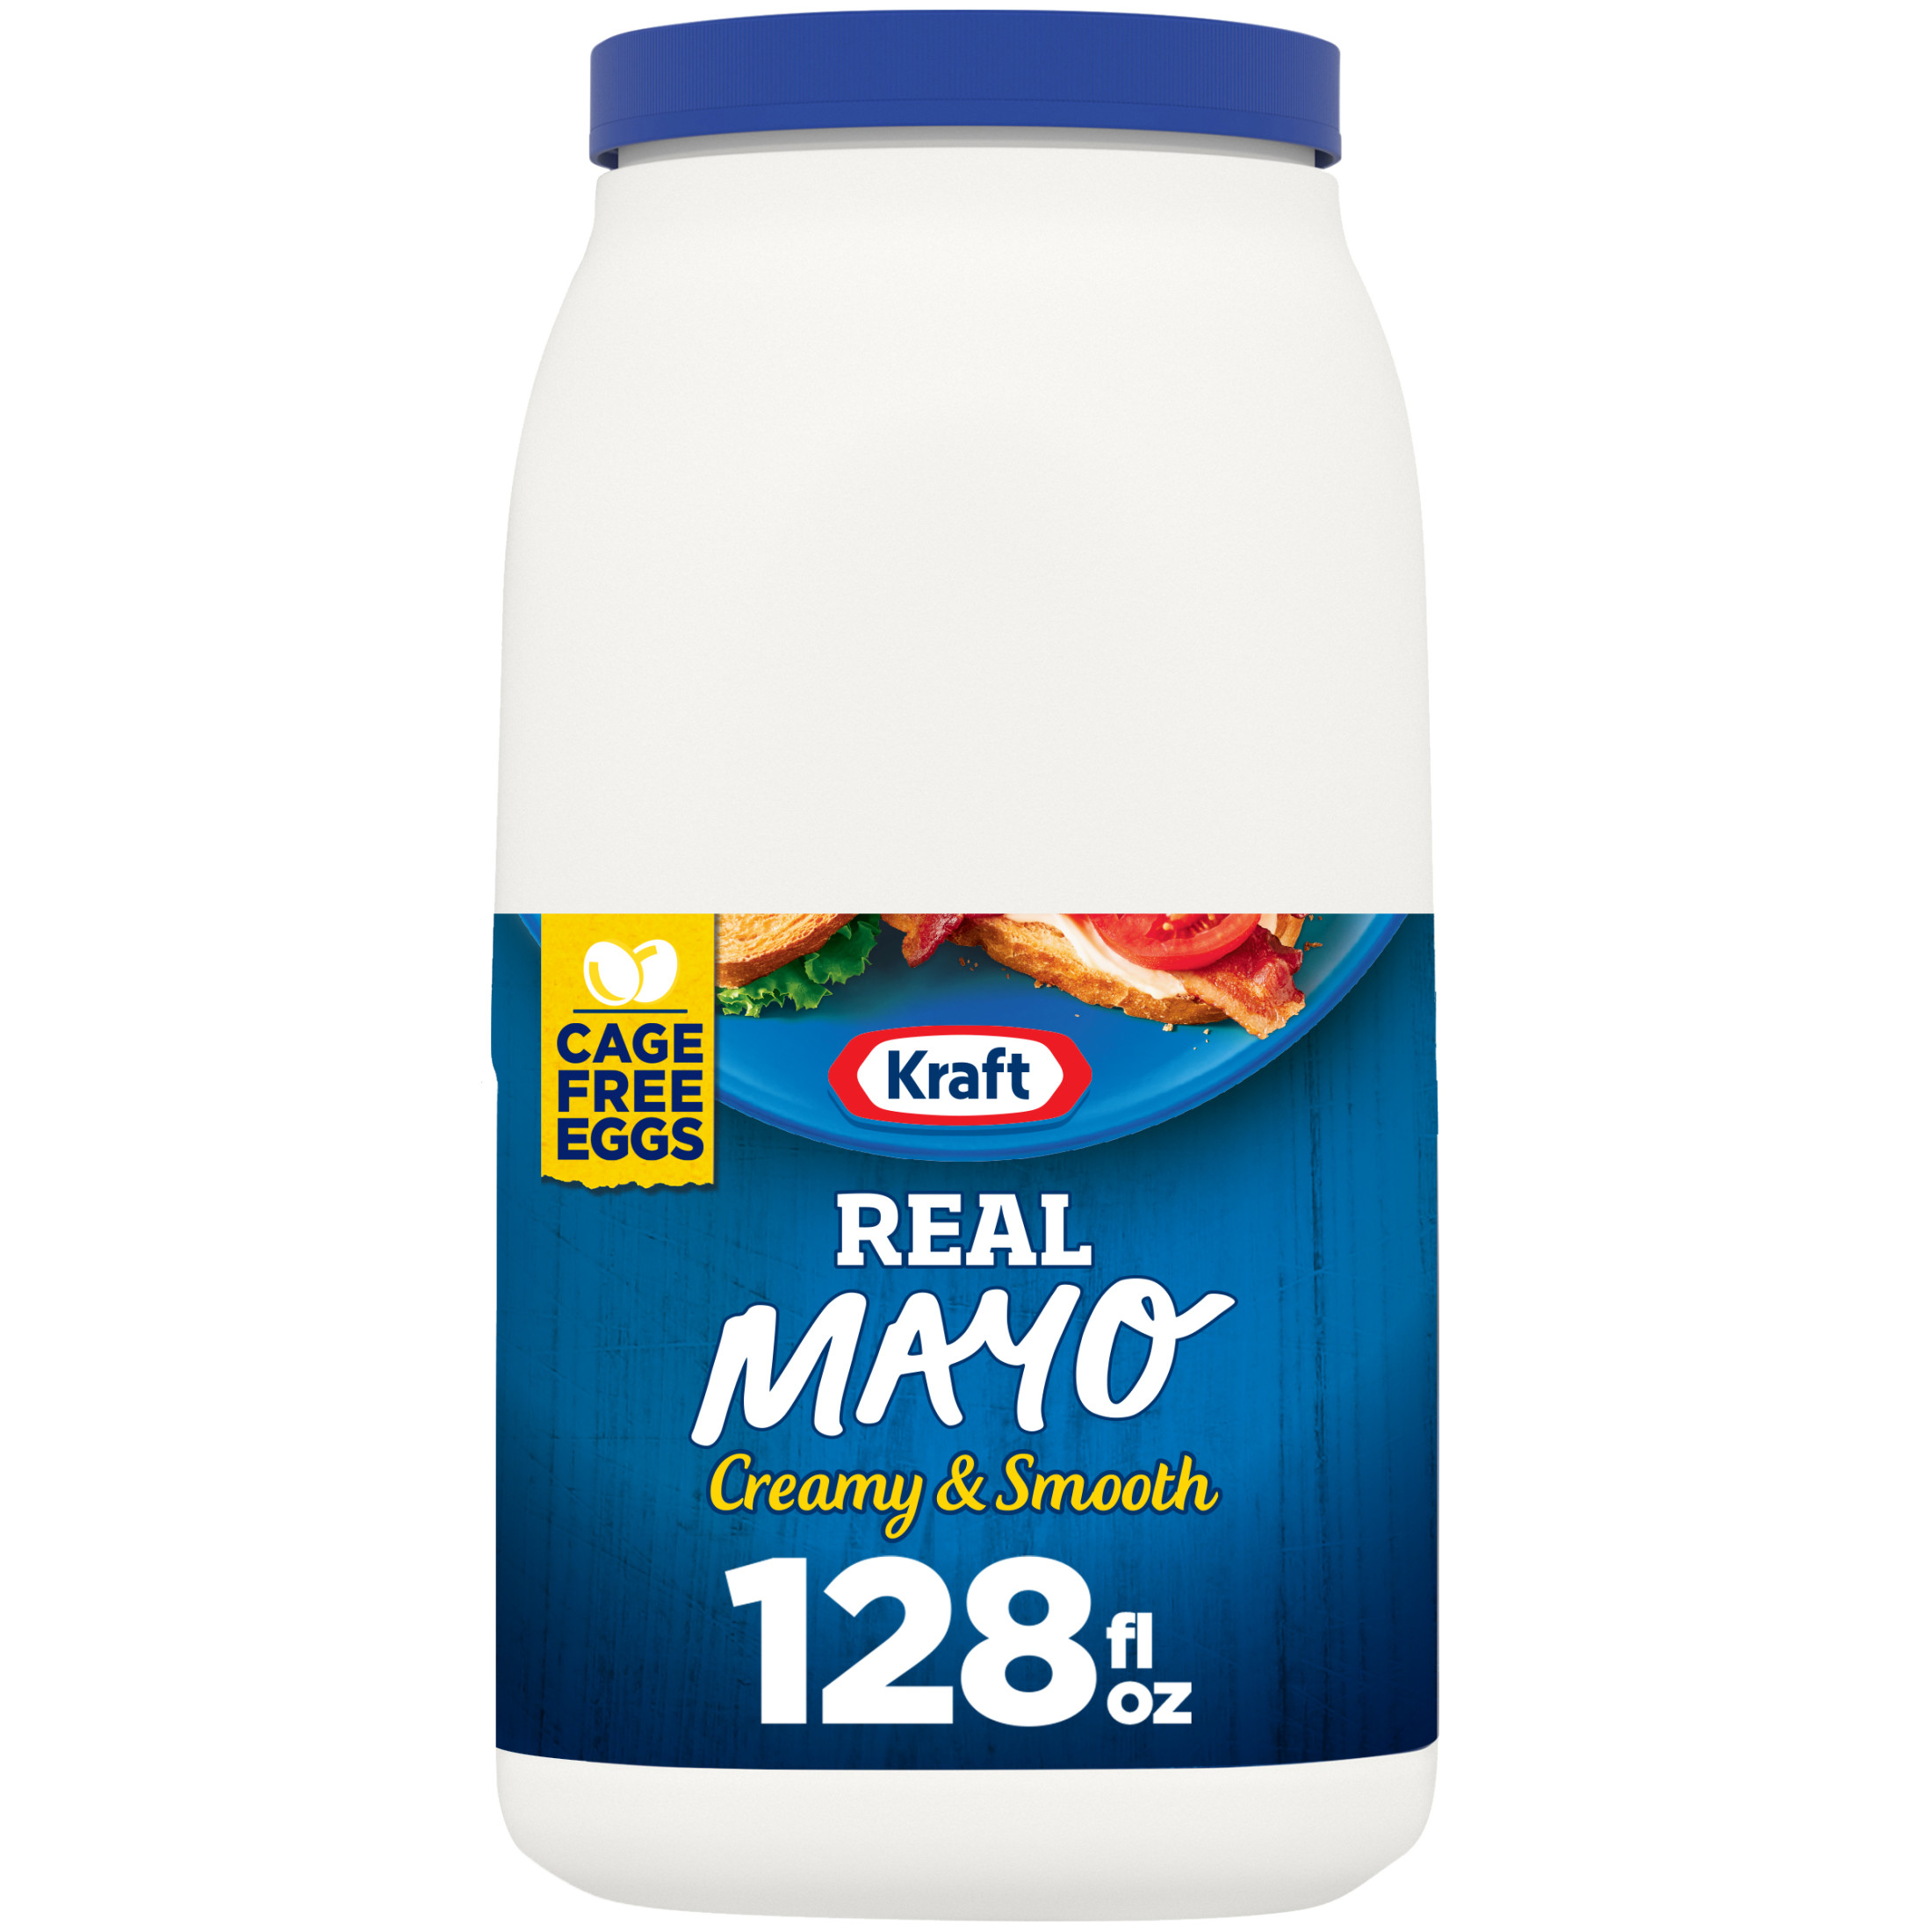 Kraft Real Mayo Creamy & Smooth Mayonnaise, 1 gal Jug - image 1 of 13